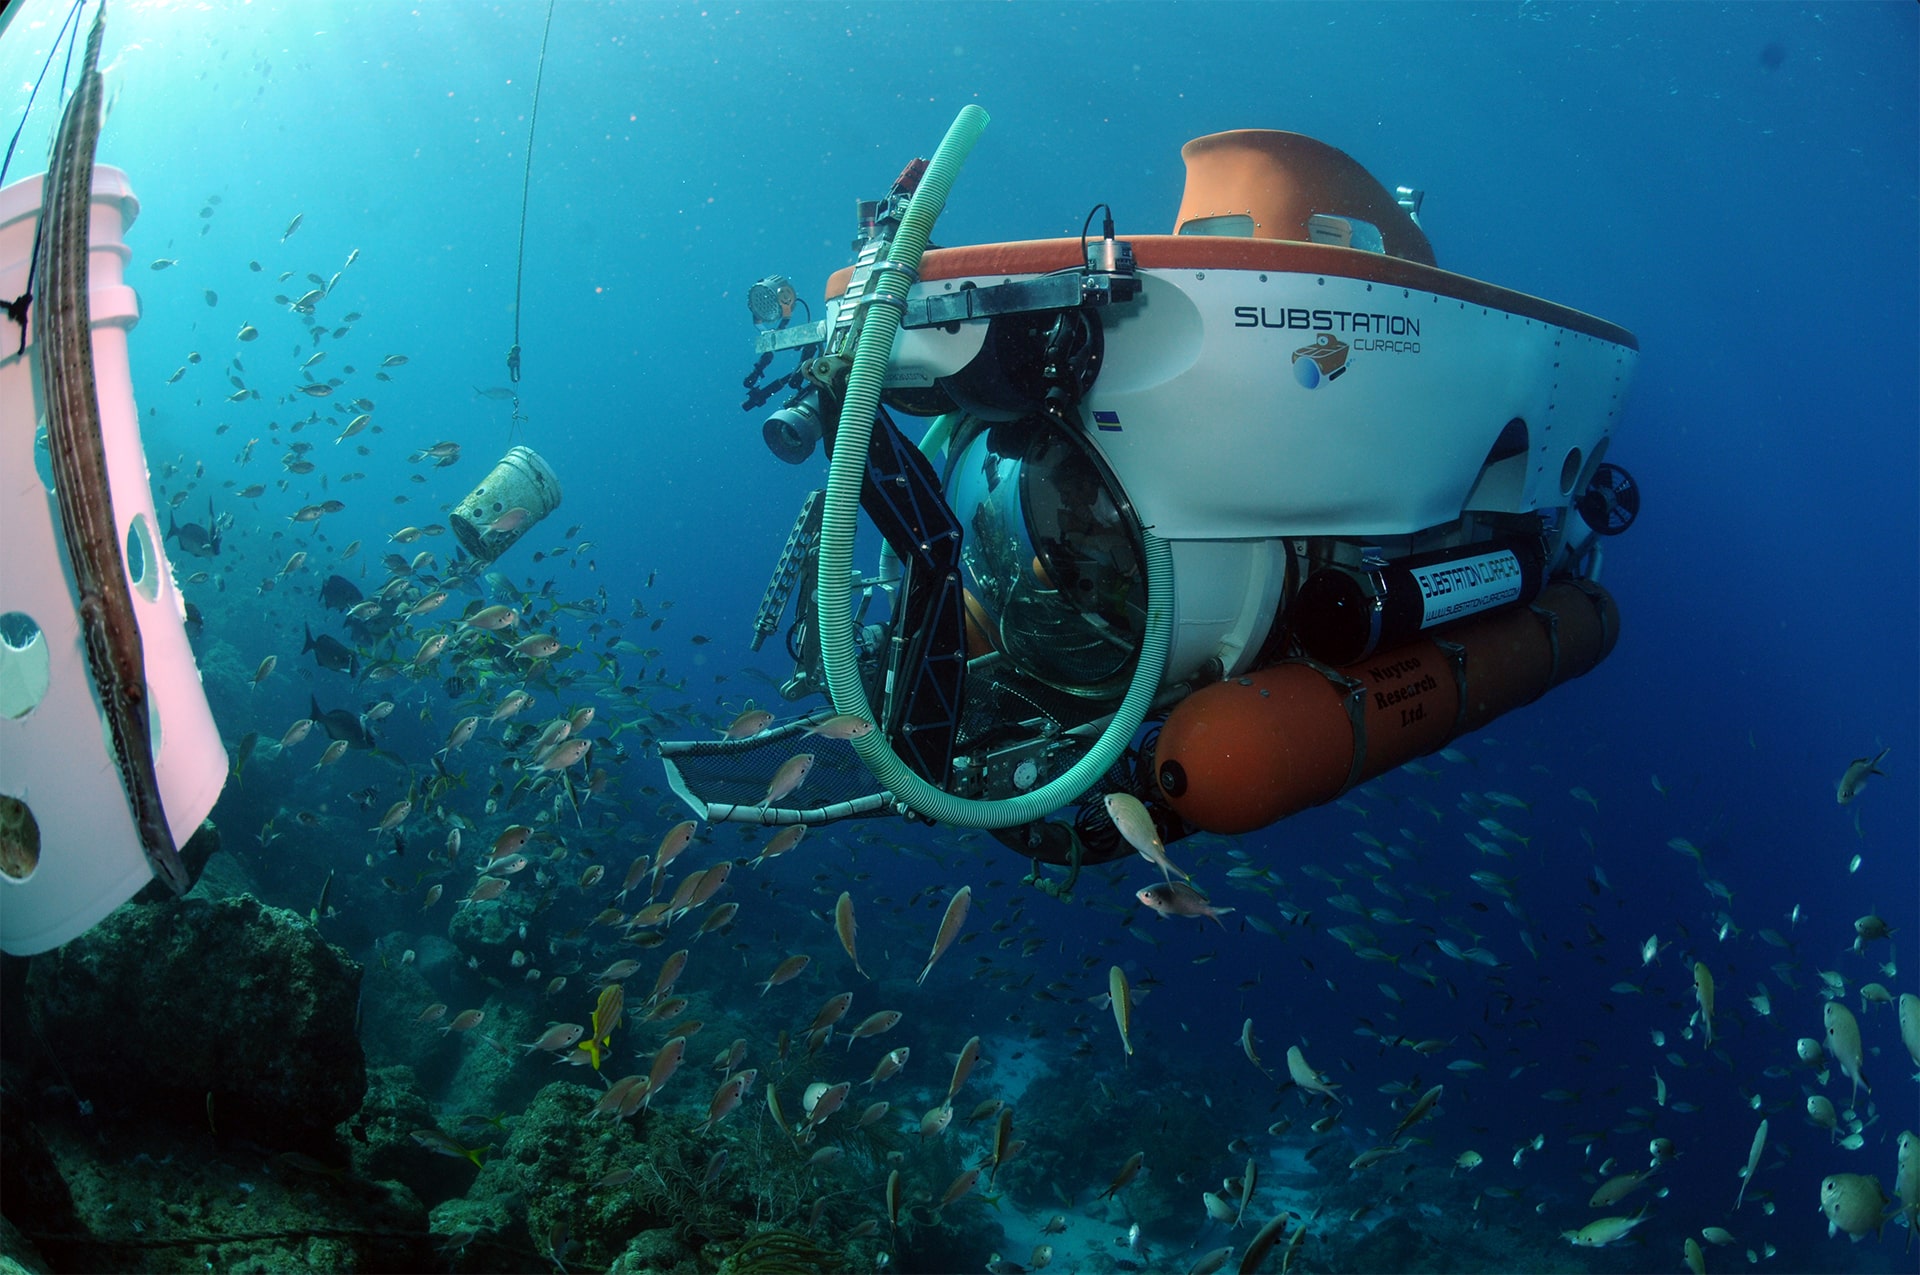 Curasub neemt onderzoekers mee om het tropische mariene ecosysteem te bestuderen, onderzoek op een unieke faciliteit.